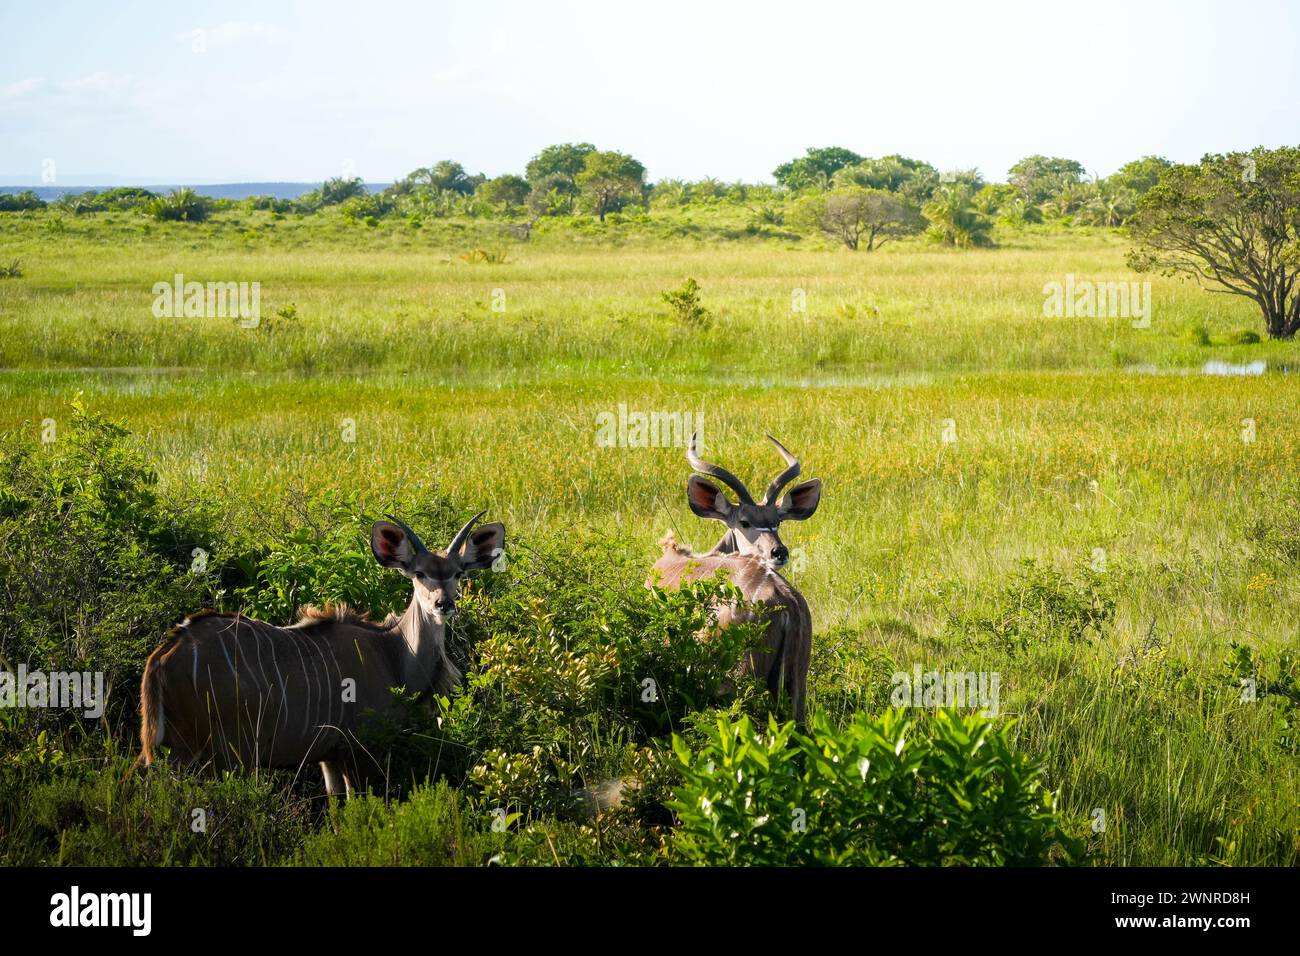 Une paire d'antilopes kudu aux cornes spirales se tient au milieu d'une végétation vibrante dans une savane. La scène capture la tranquillité de ces majestueux c Banque D'Images